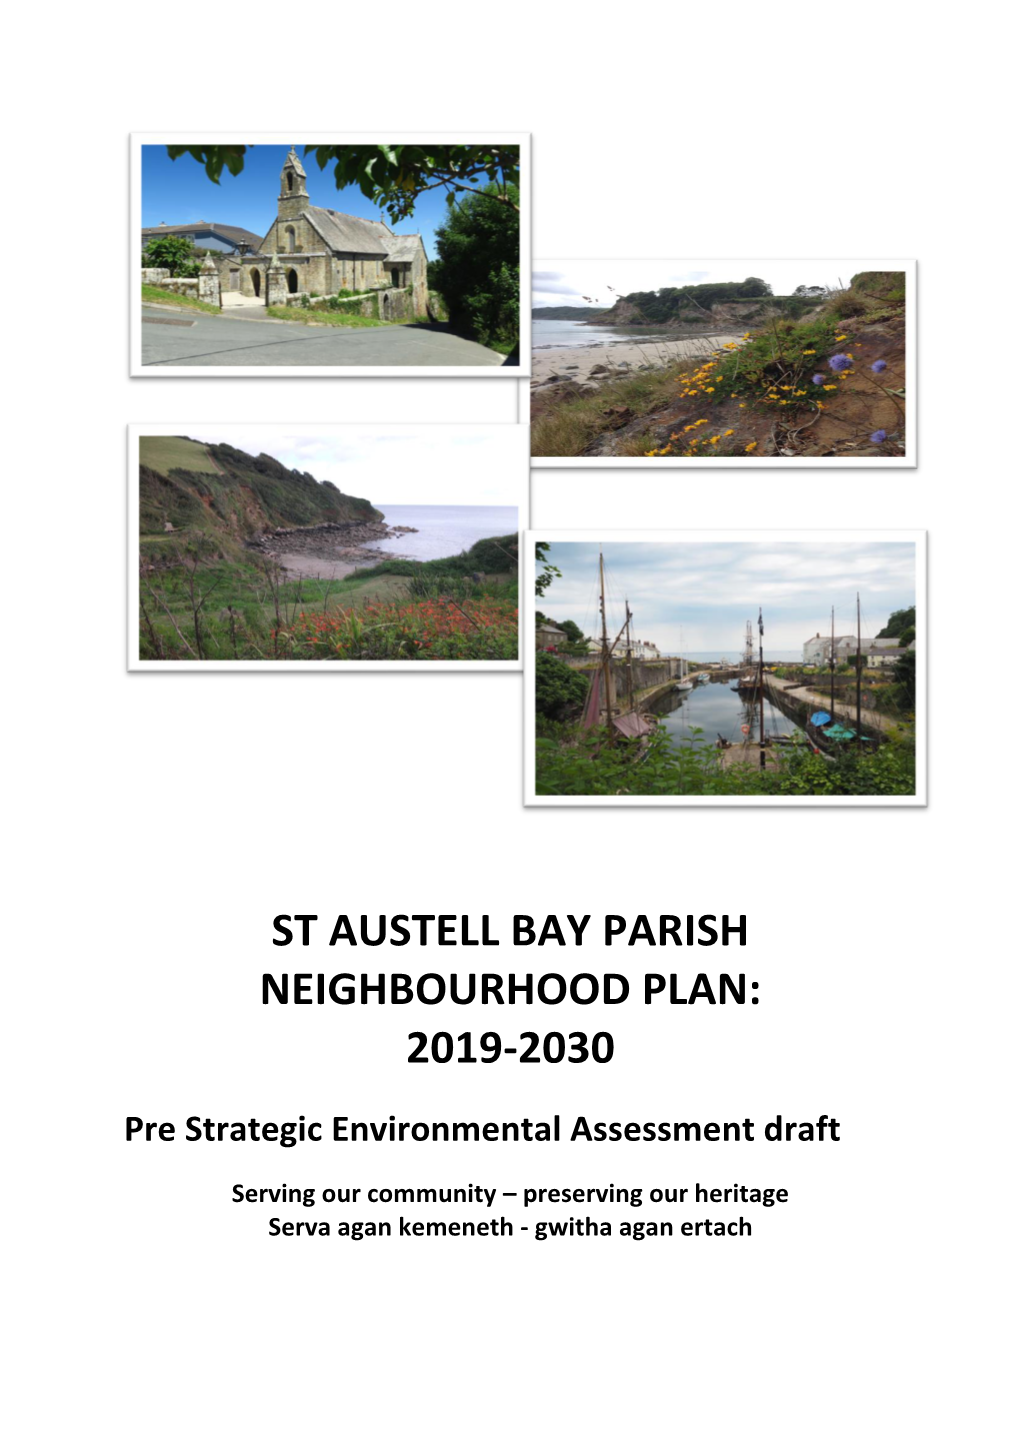 St Austell Bay Parish Neighbourhood Plan: 2019-2030